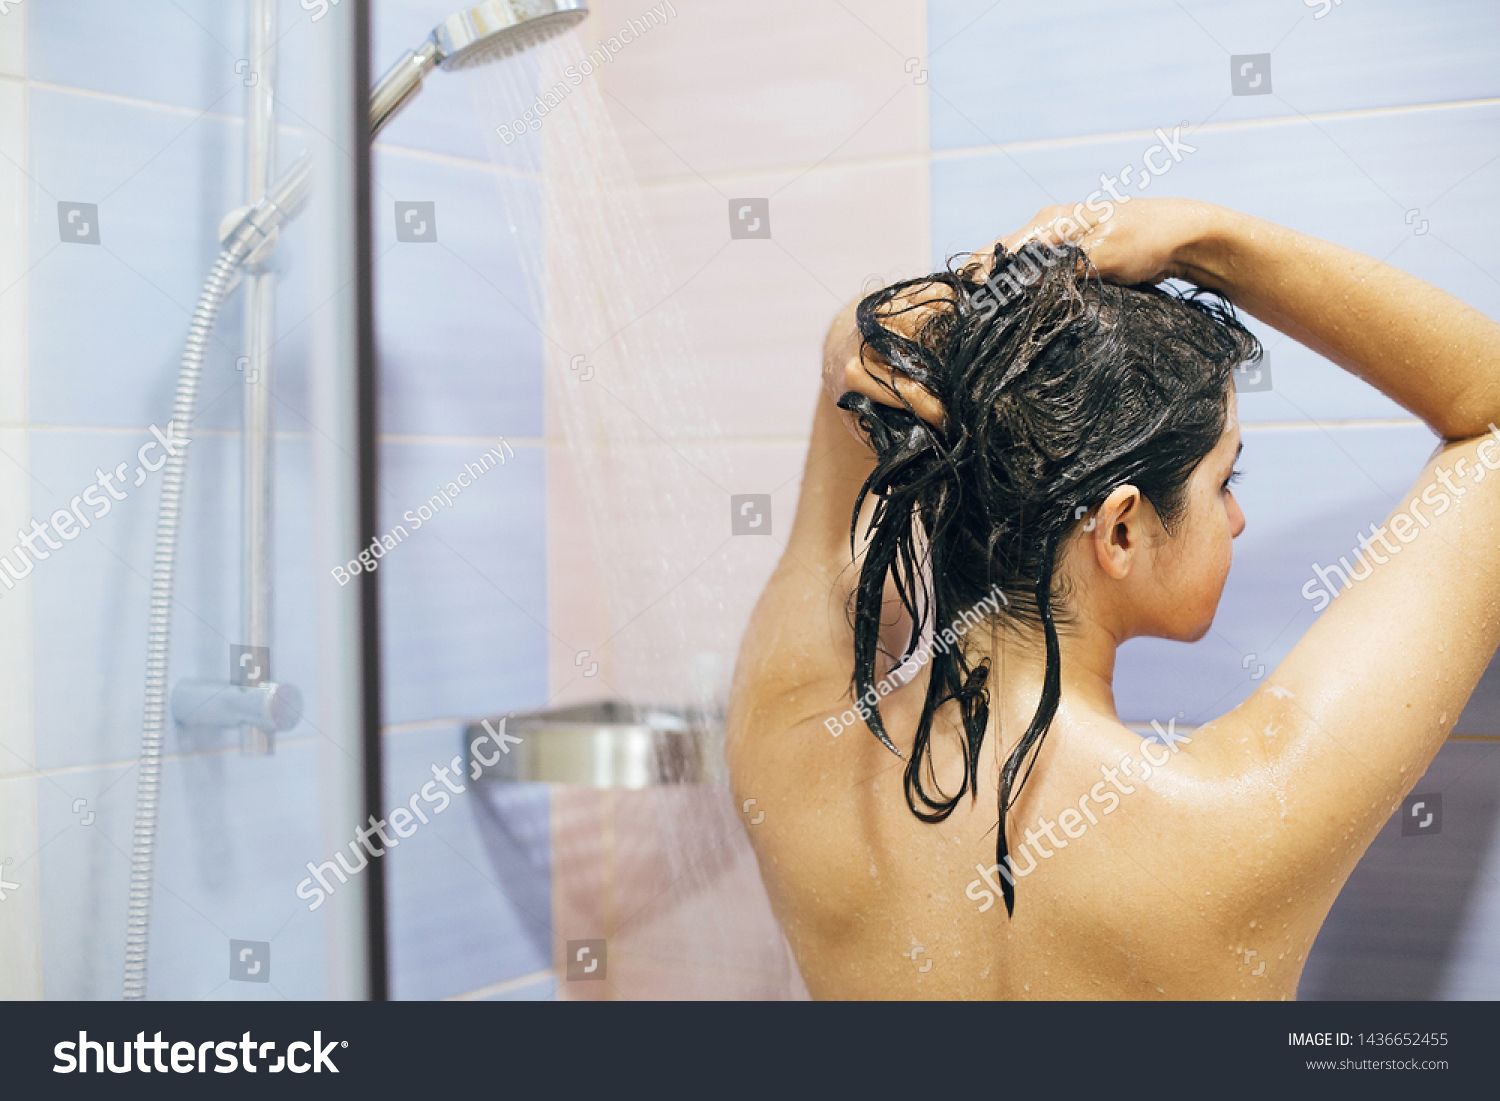 Молодая жена принимает душ фото